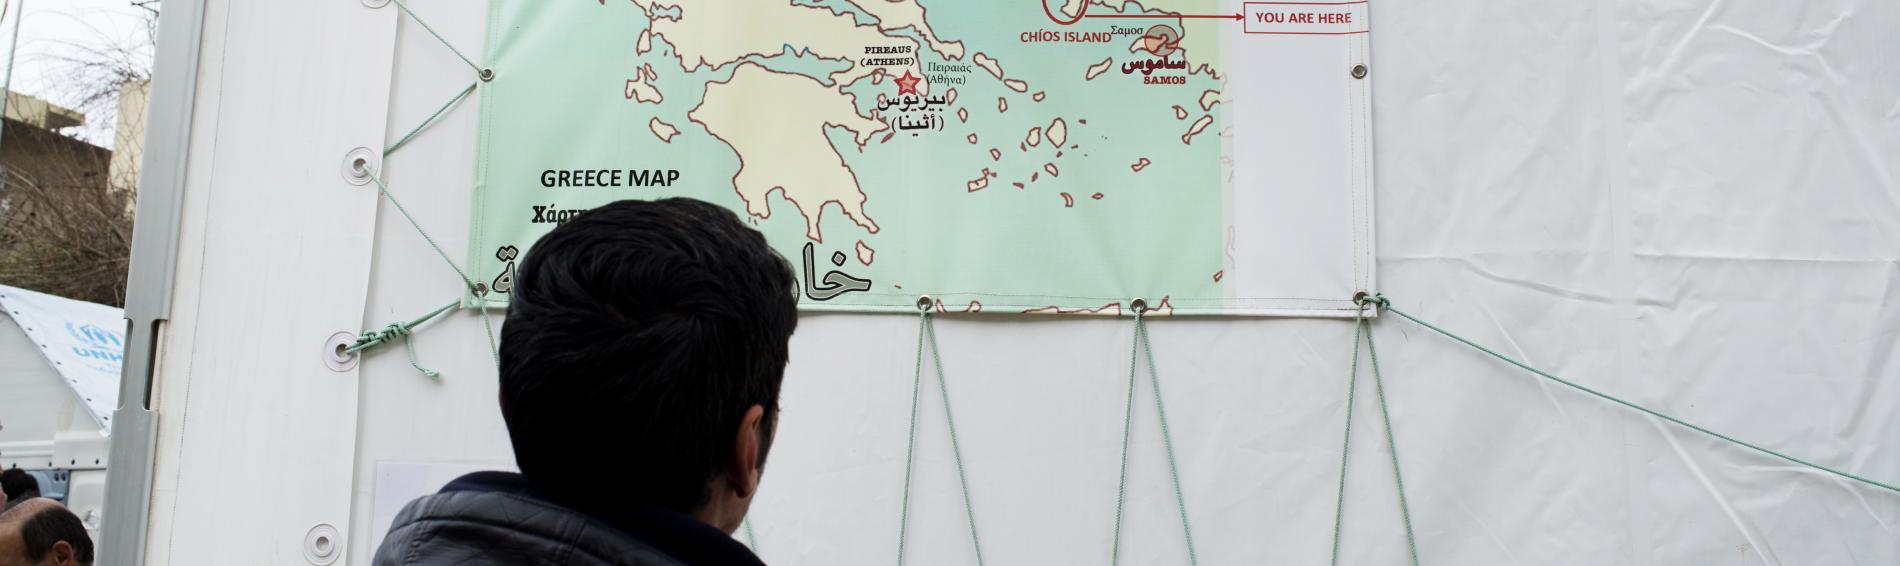  Ein Flüchtling betrachtet eine Landkarte, auf der die Insel Chios markiert ist.